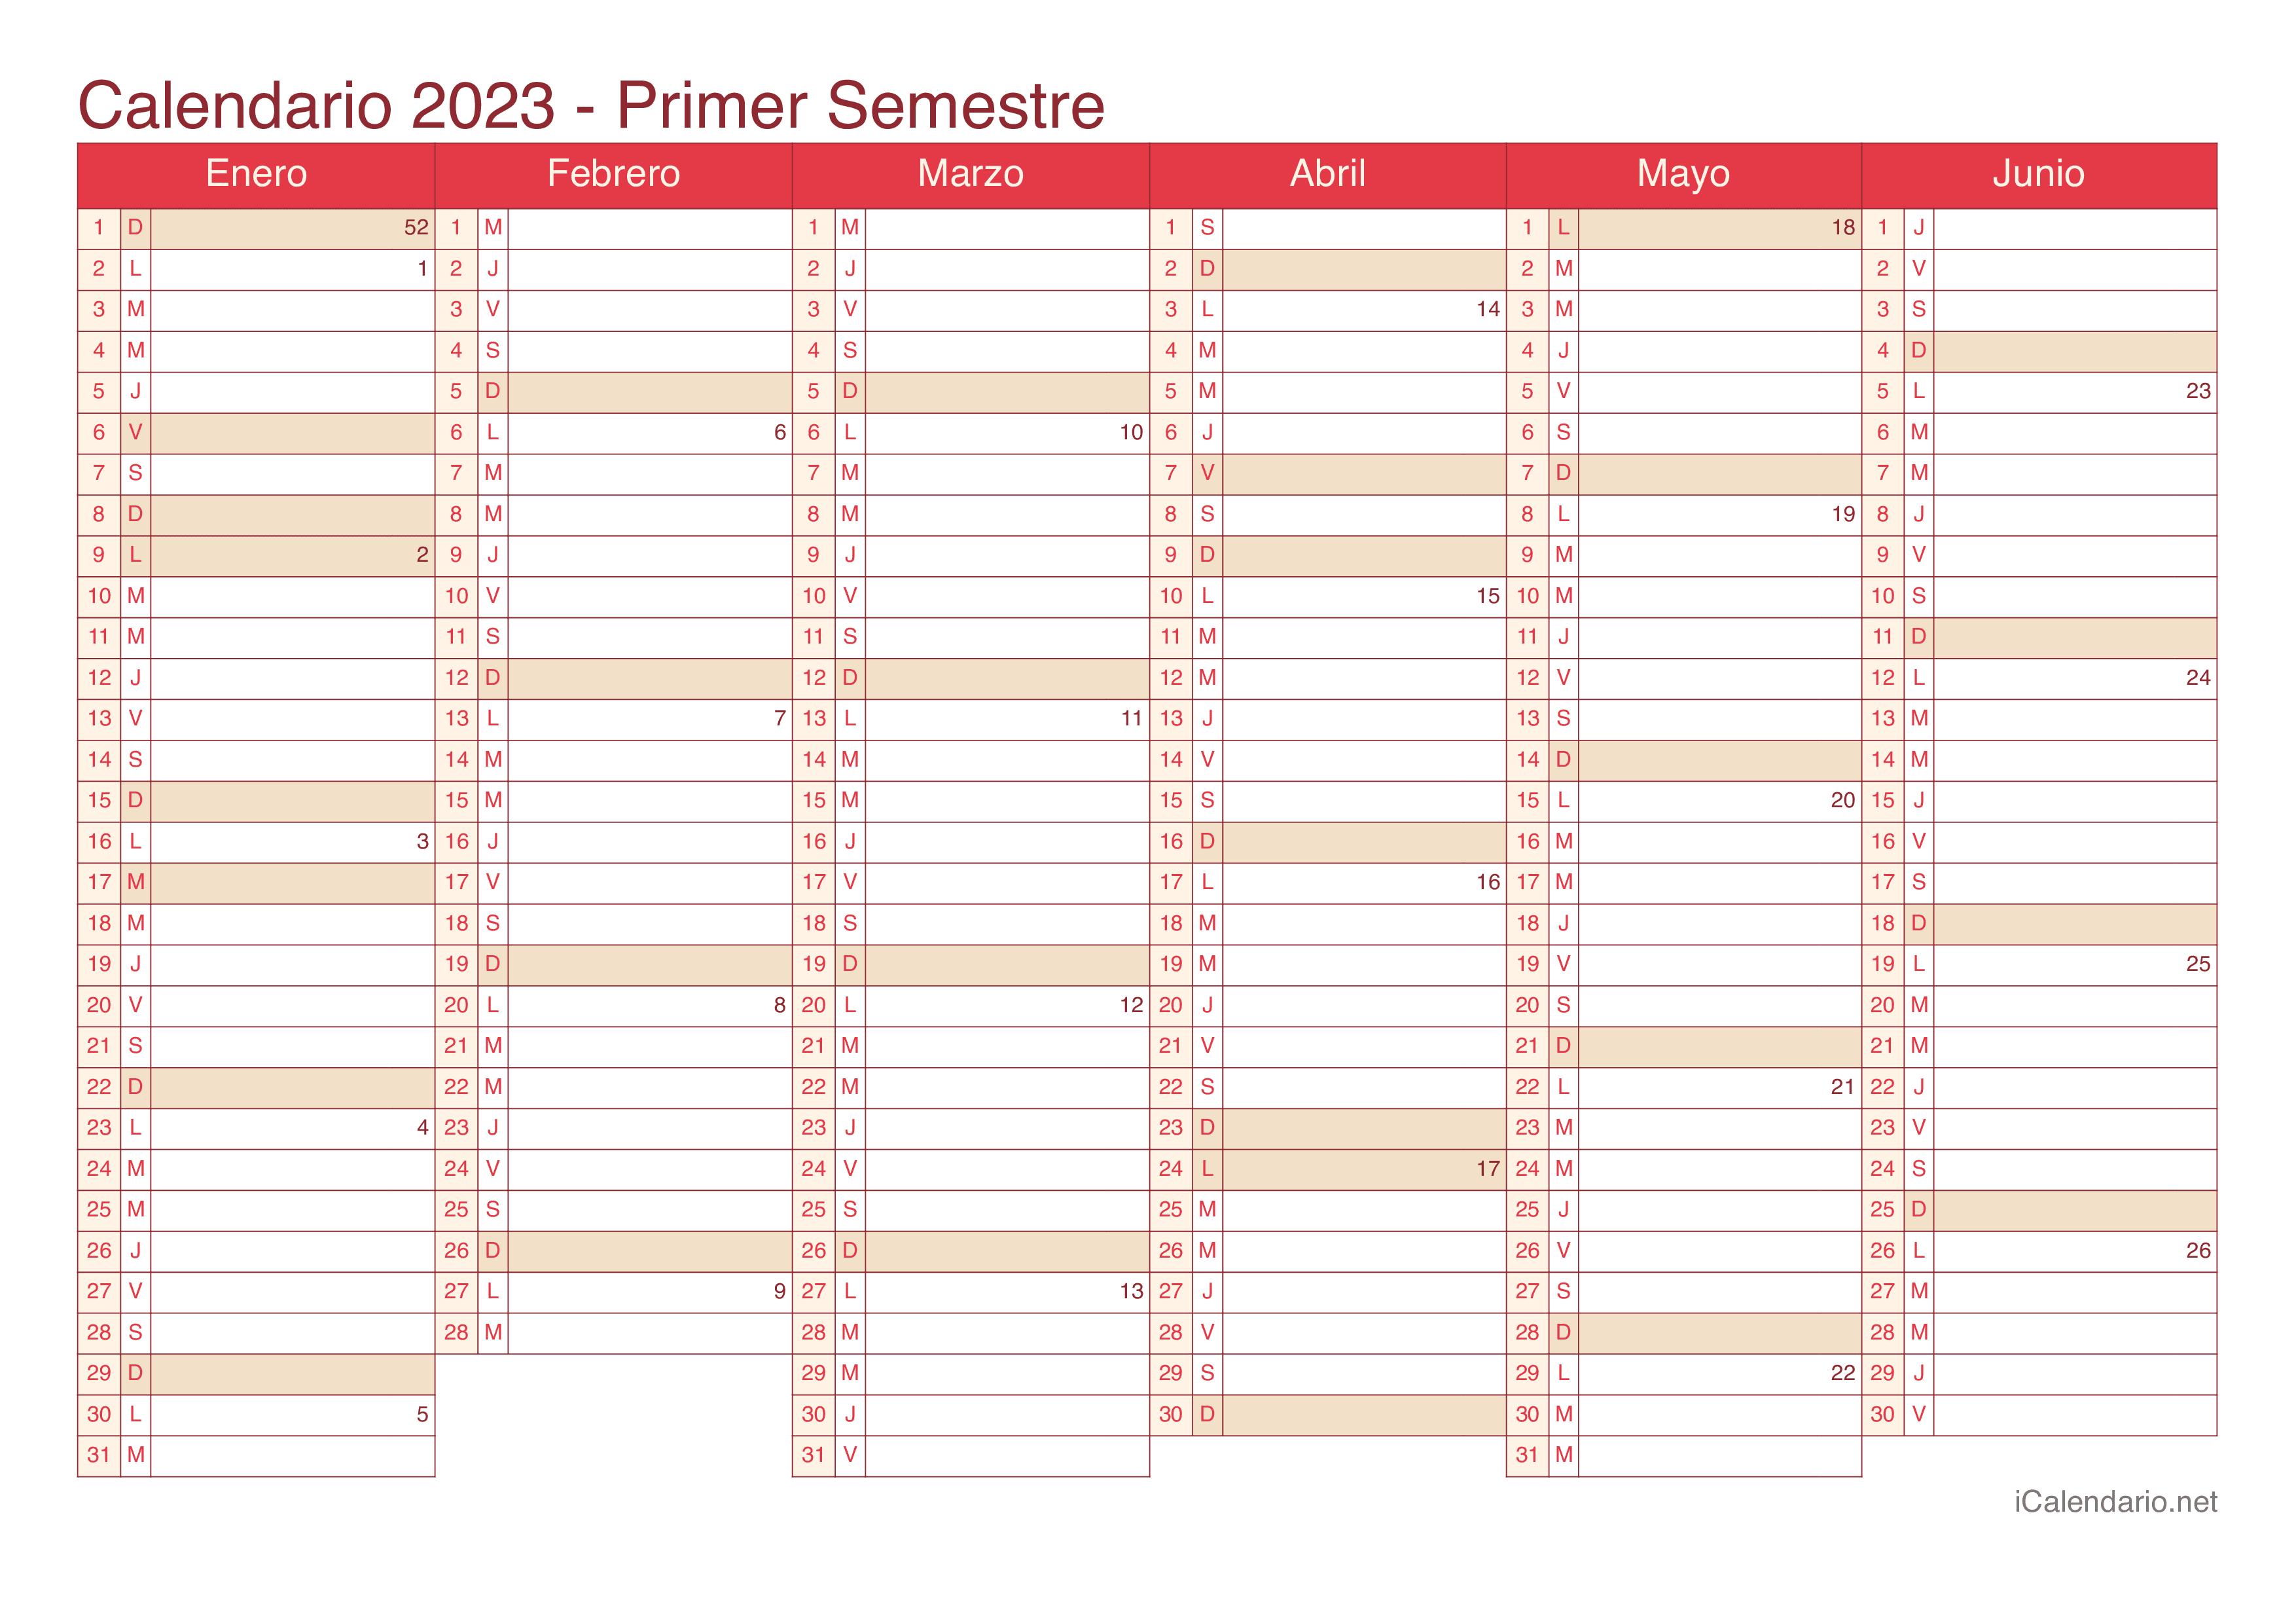 Calendario por semestre com números da semana 2023 - Cherry